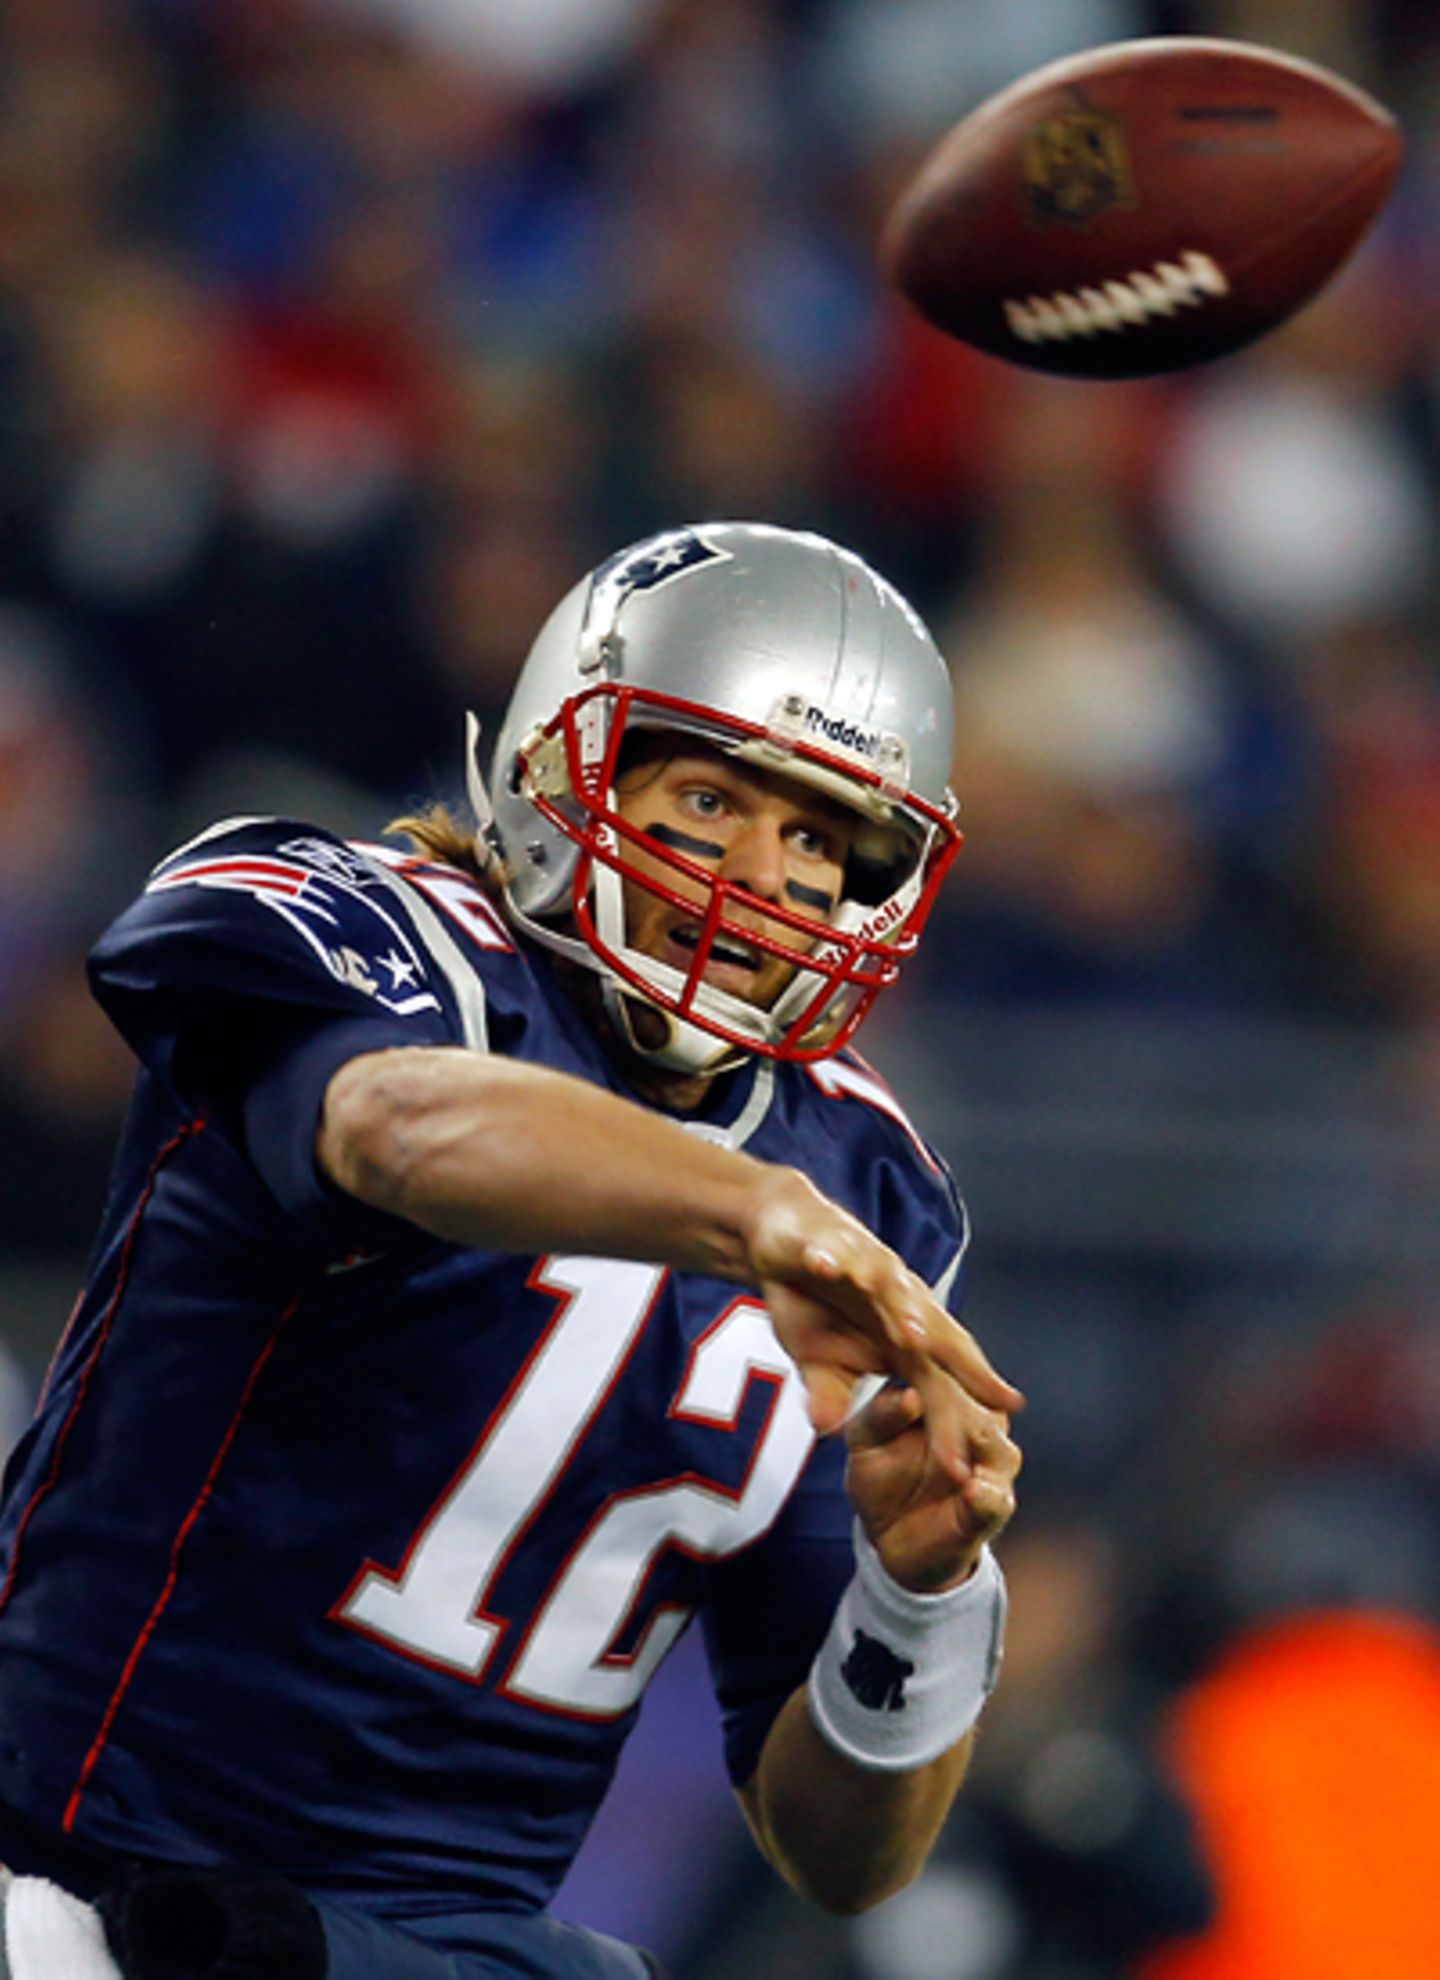 Und so sieht Tom Brady in seiner Arbeitskleidung aus: Er ist US-amerikanischer Footballspieler für die New England Patriots auf